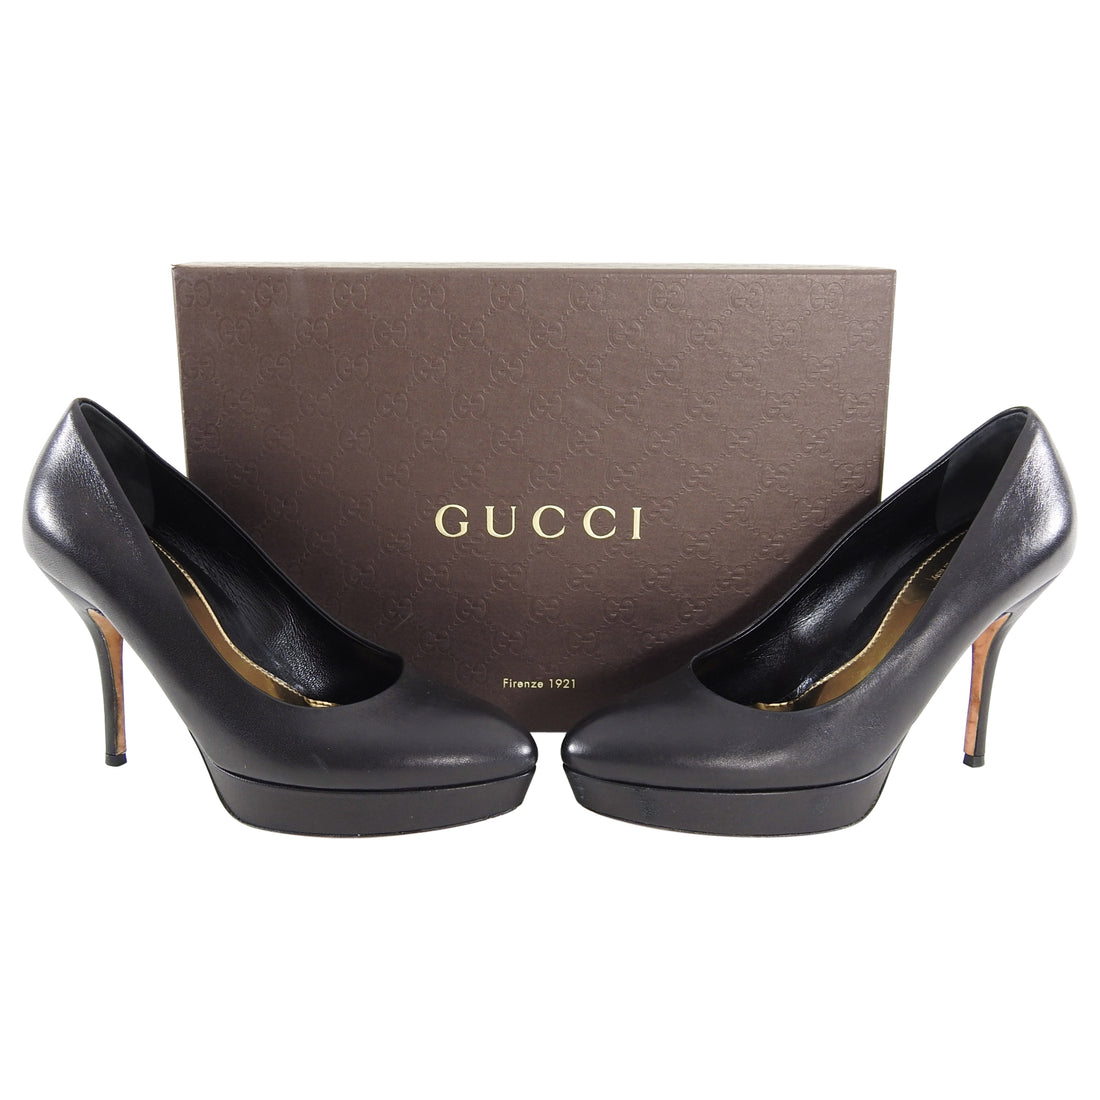 gucci pump heels